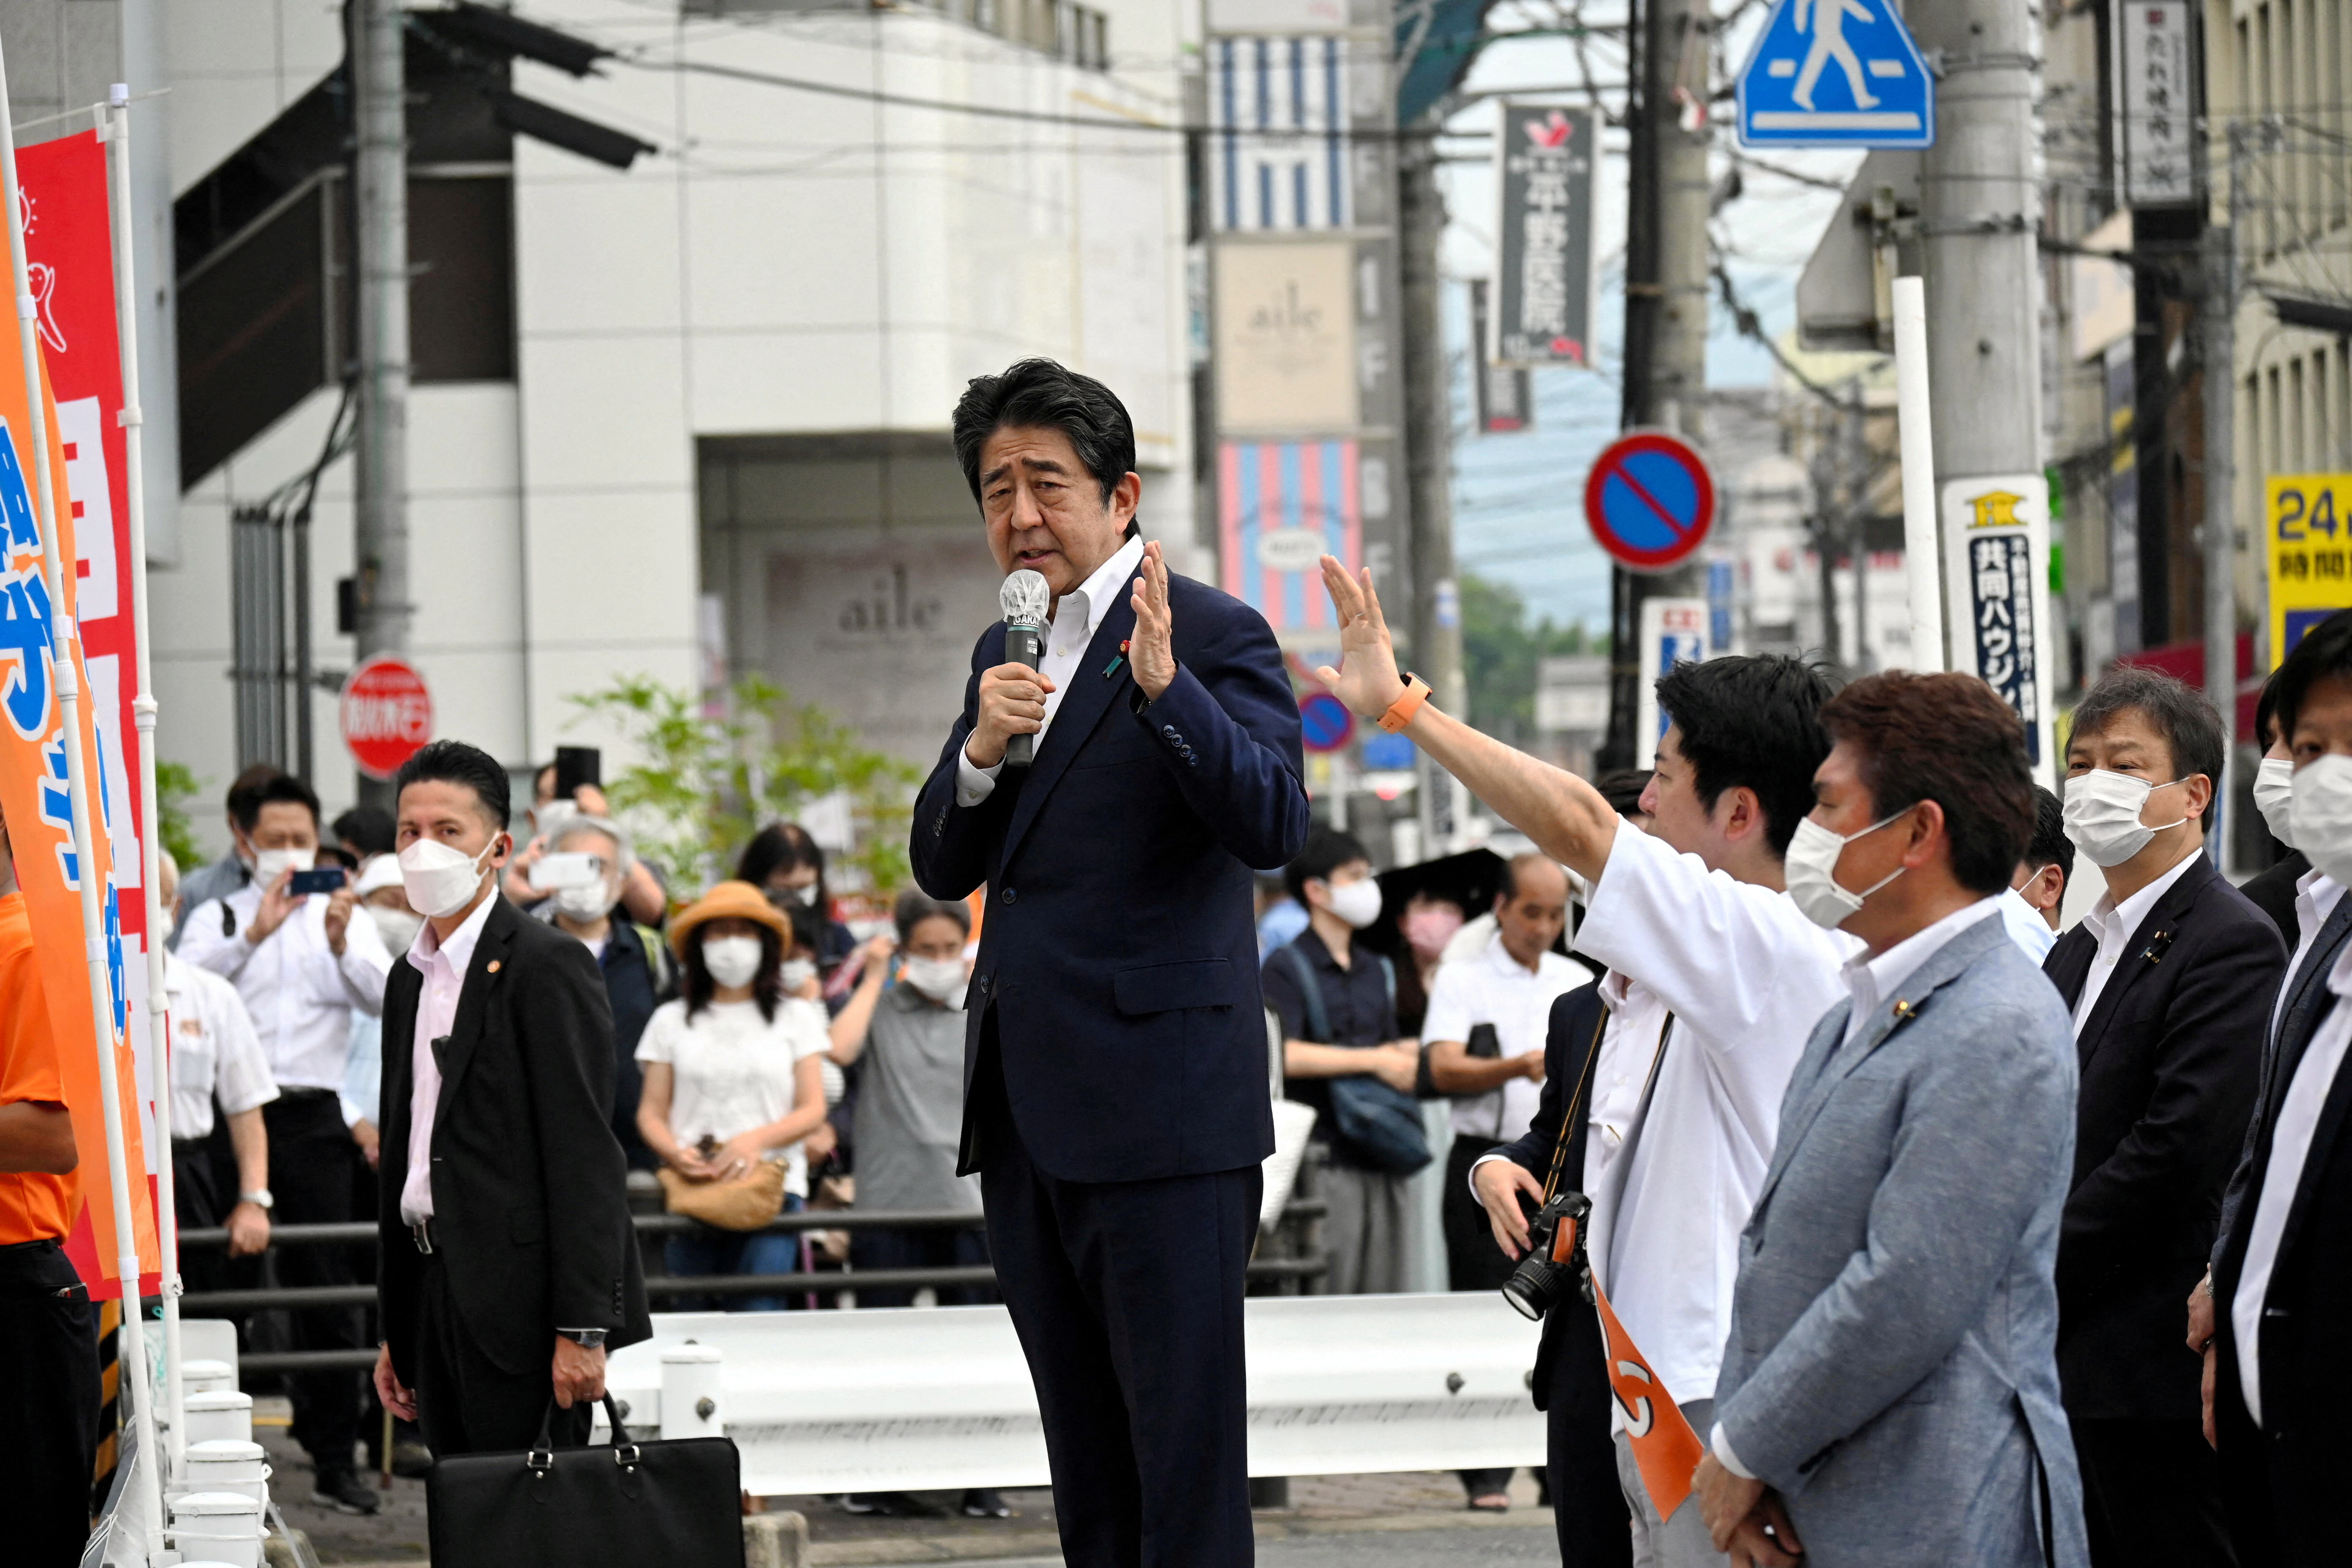 El sospechoso del crimen fue detenido en el sitio y se cree que atacó a Abe por pensar que estaba ligado a la Iglesia de la Unificación.